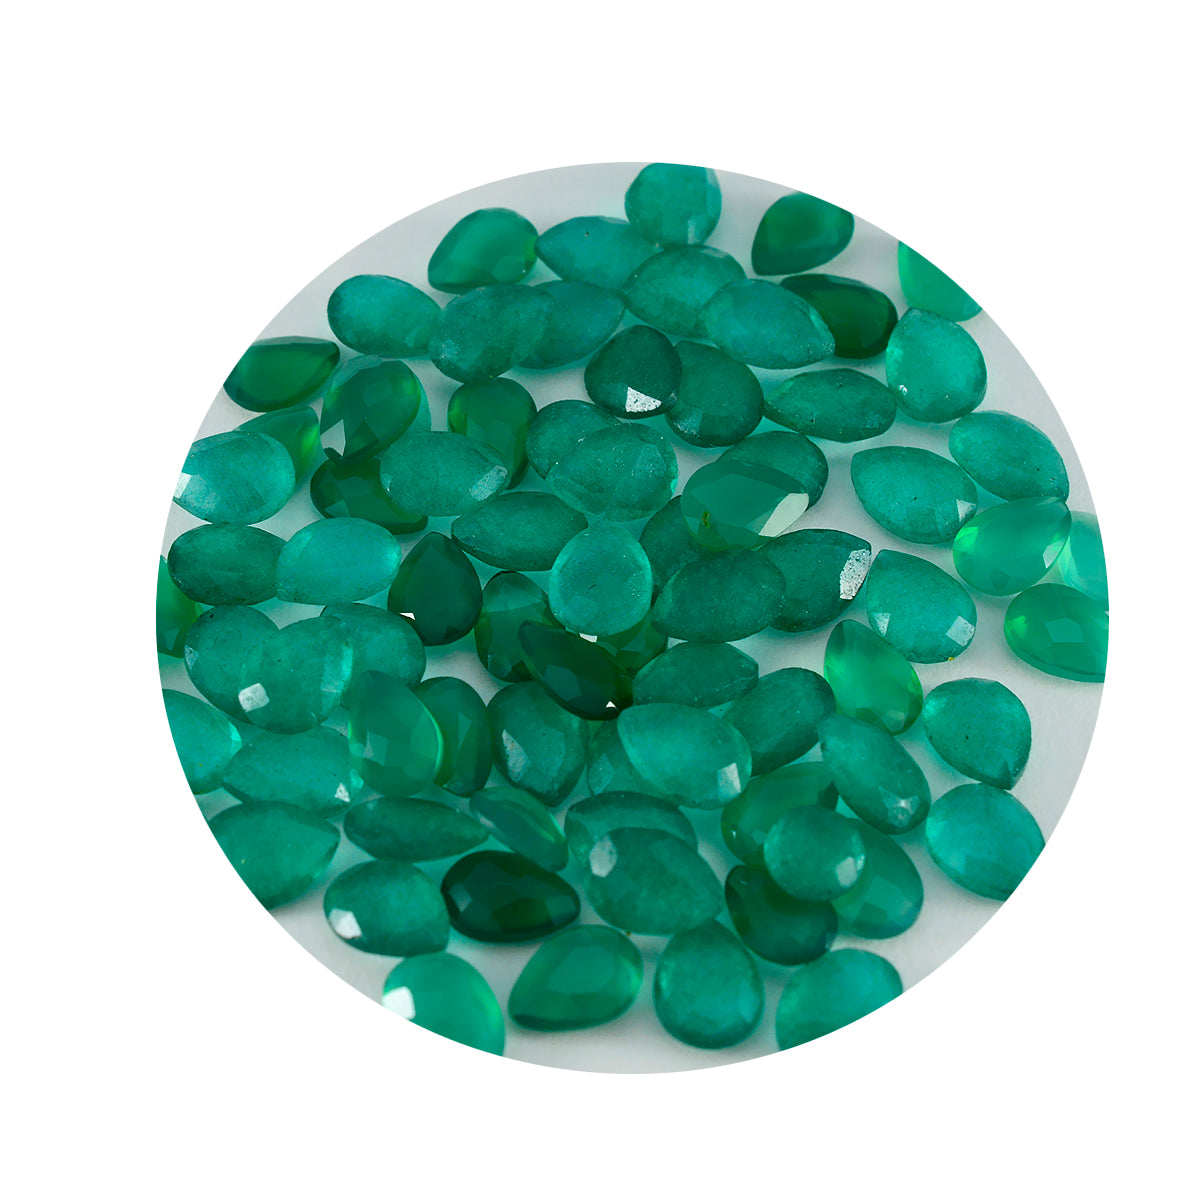 riyogems 1 шт. натуральная зеленая яшма граненая 4x6 мм грушевидная форма драгоценный камень удивительного качества